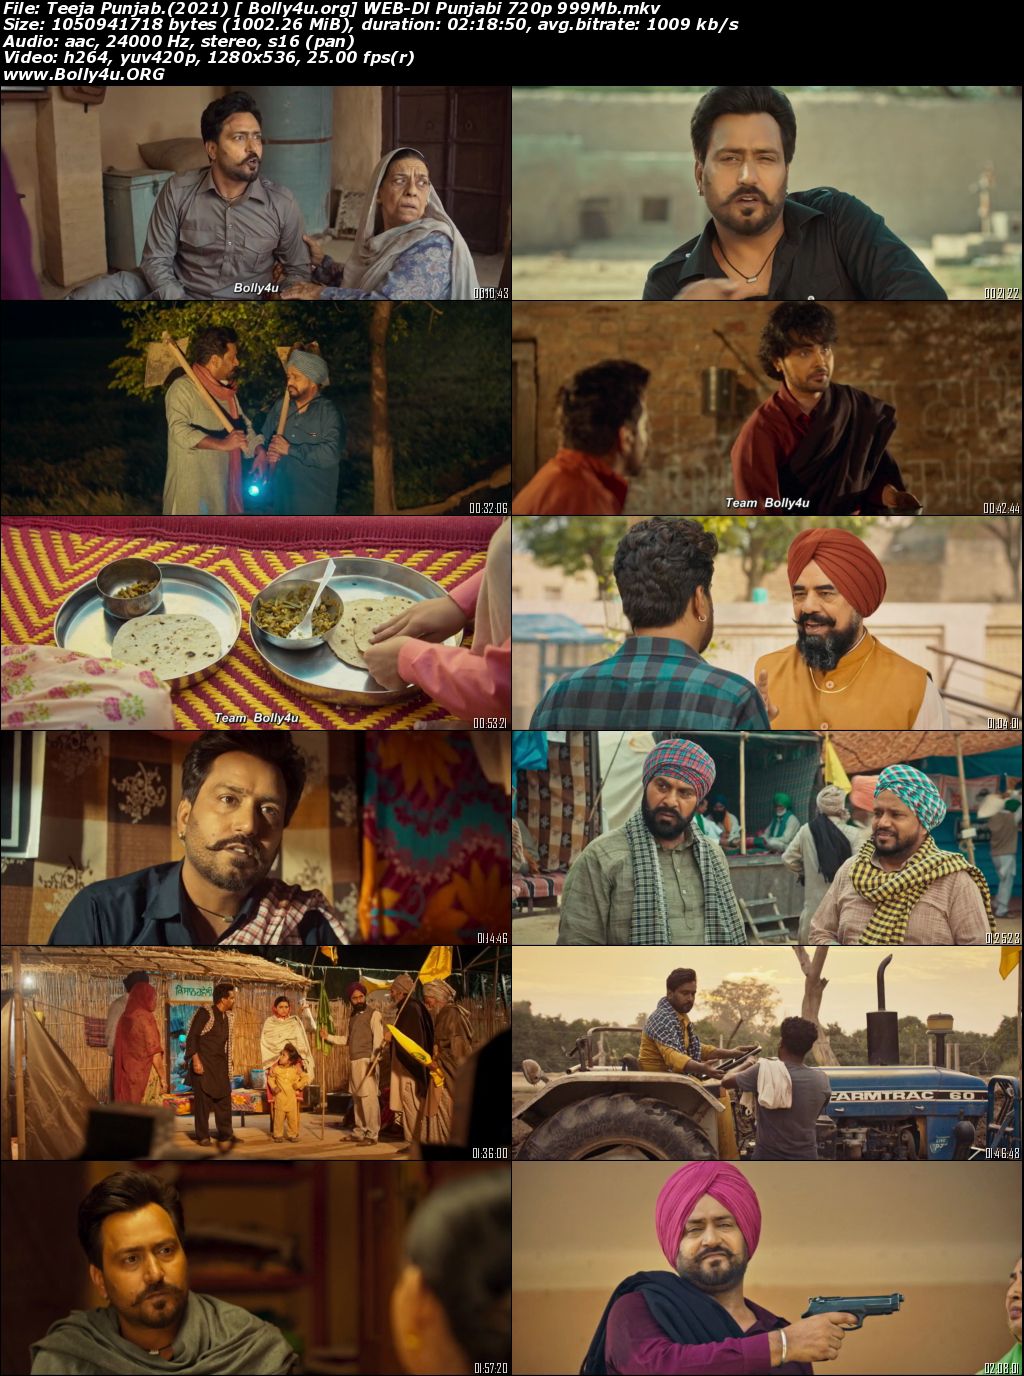 Teeja Punjab 2021 WEB-DL 999MB Punjabi Movie Download 720p